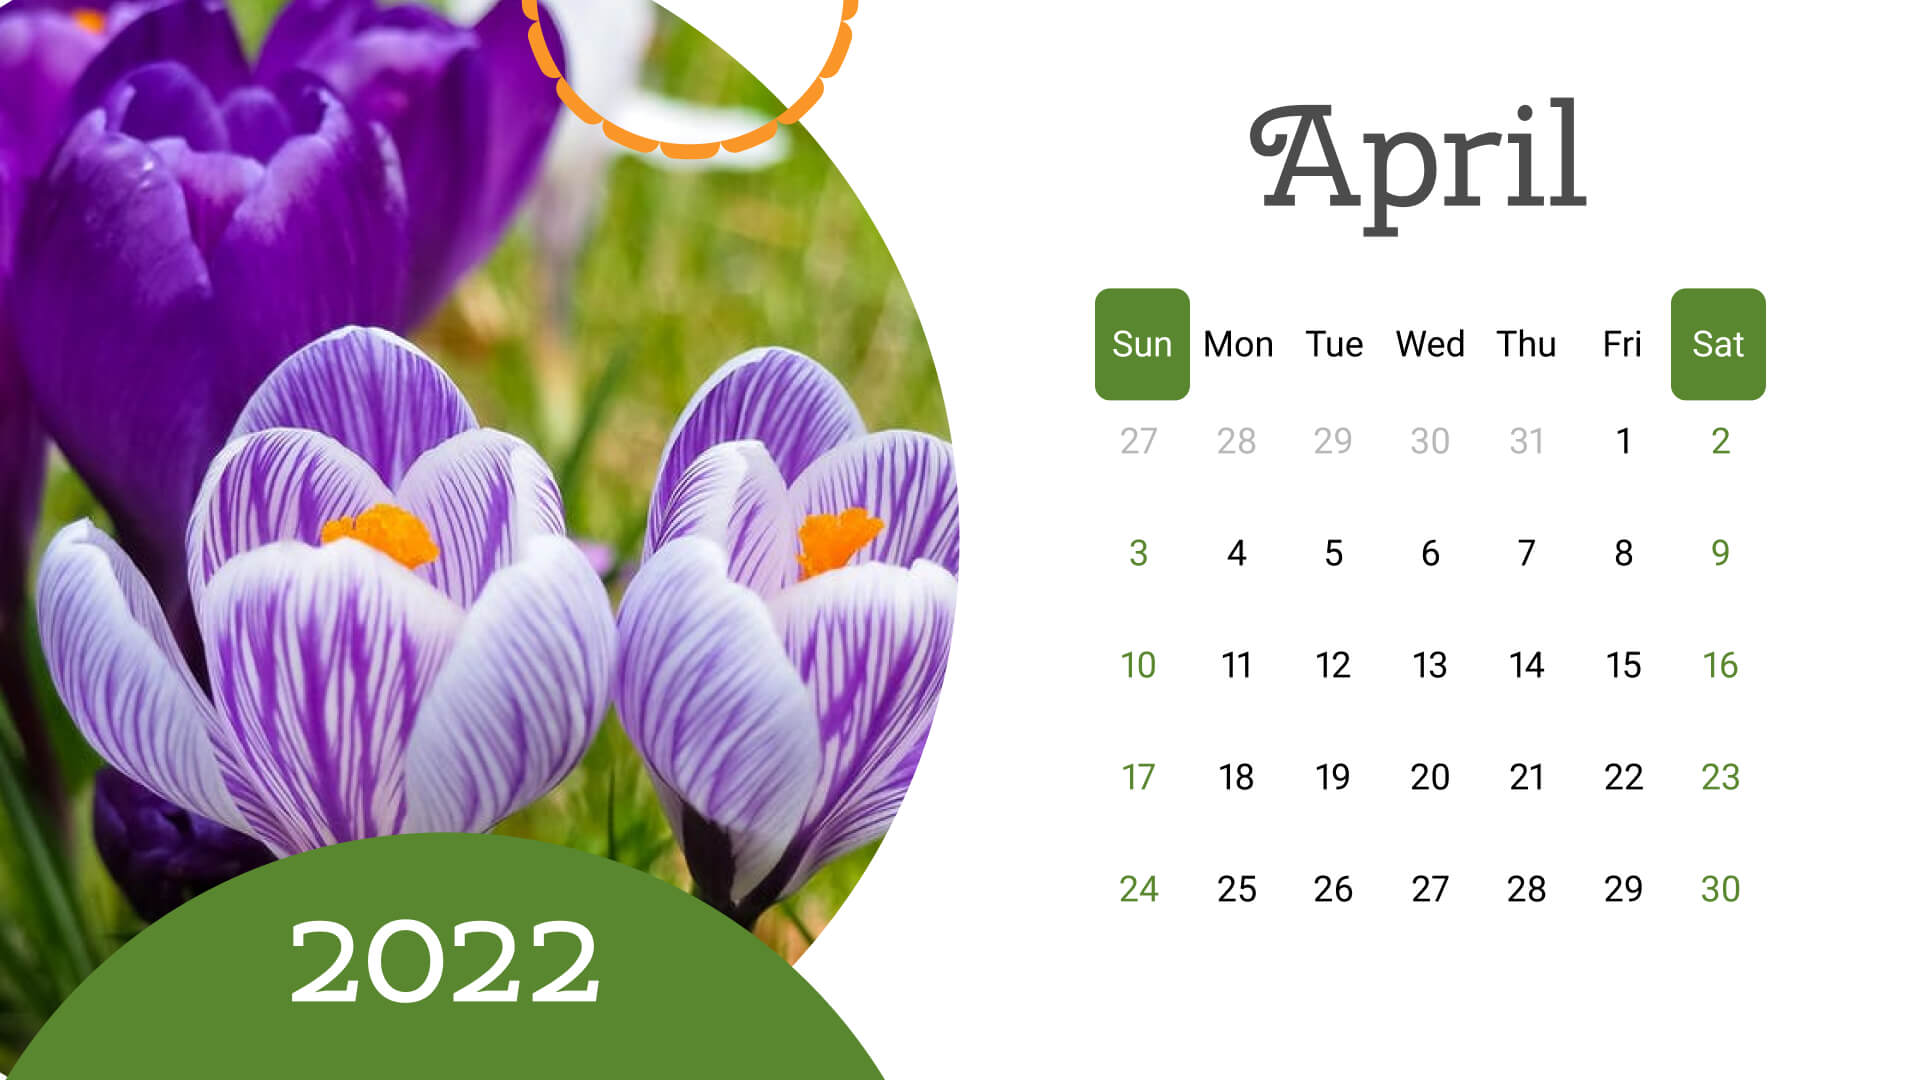 10 free printable april calendars 2022 1920x1080 1